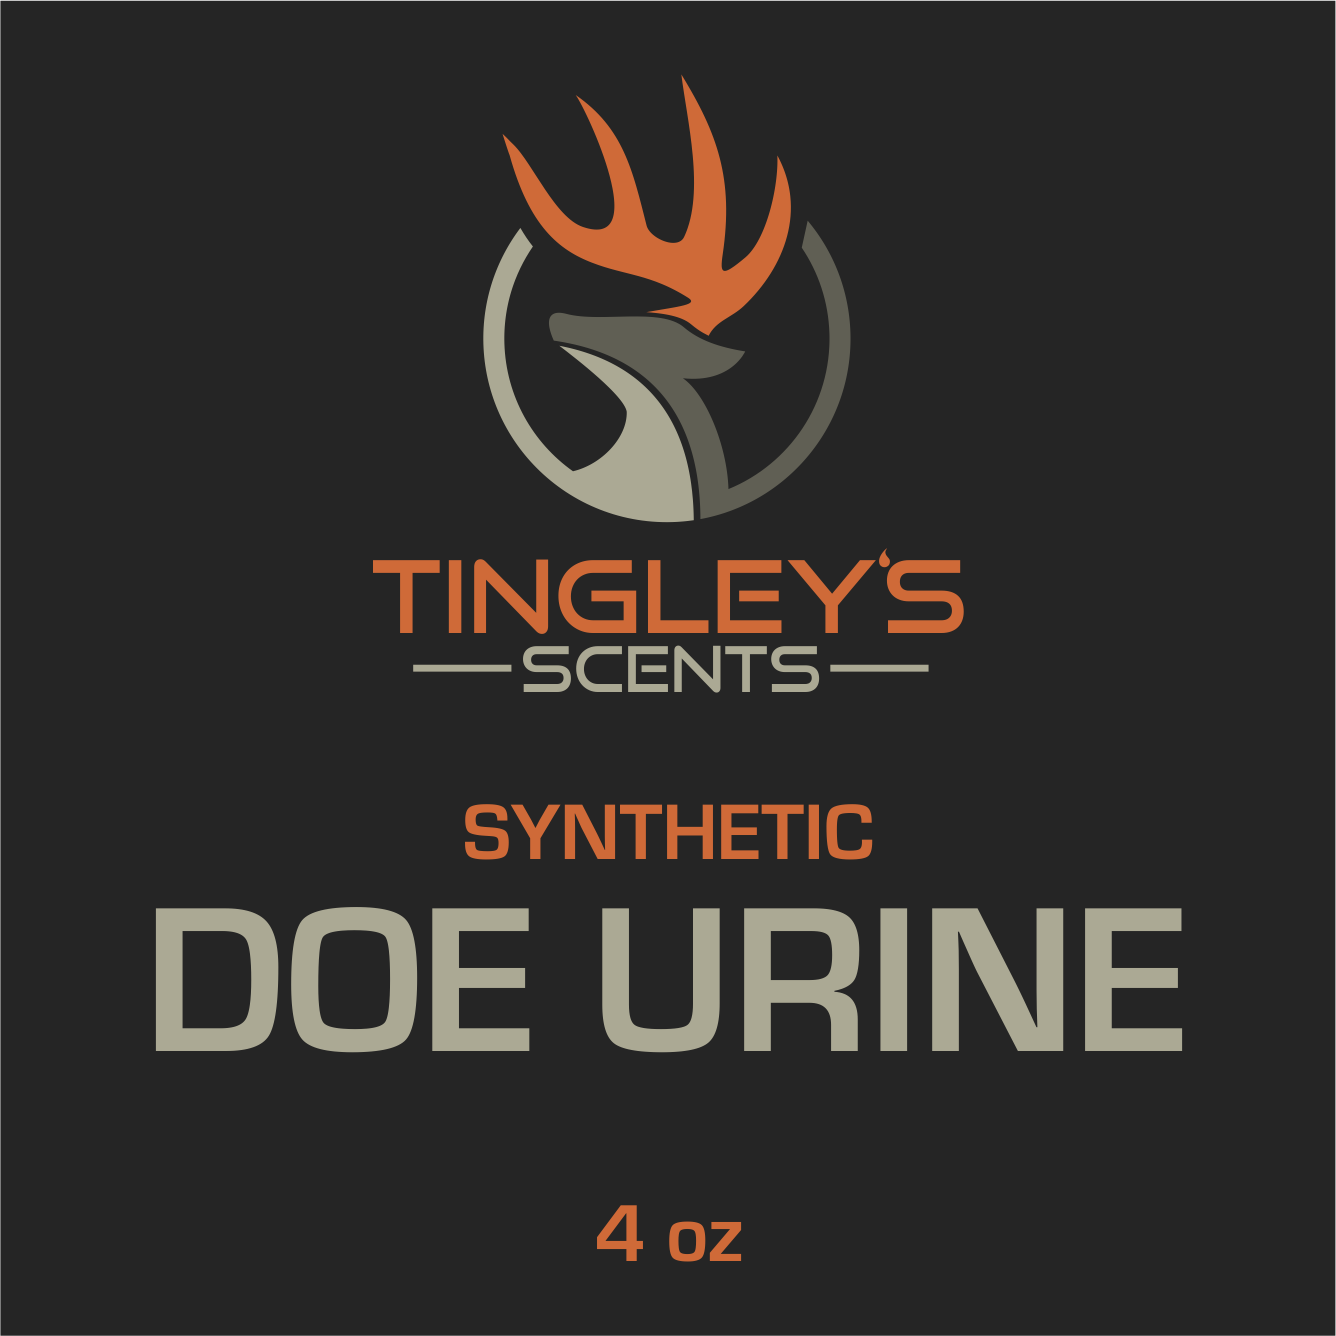 DOE - Synthetic